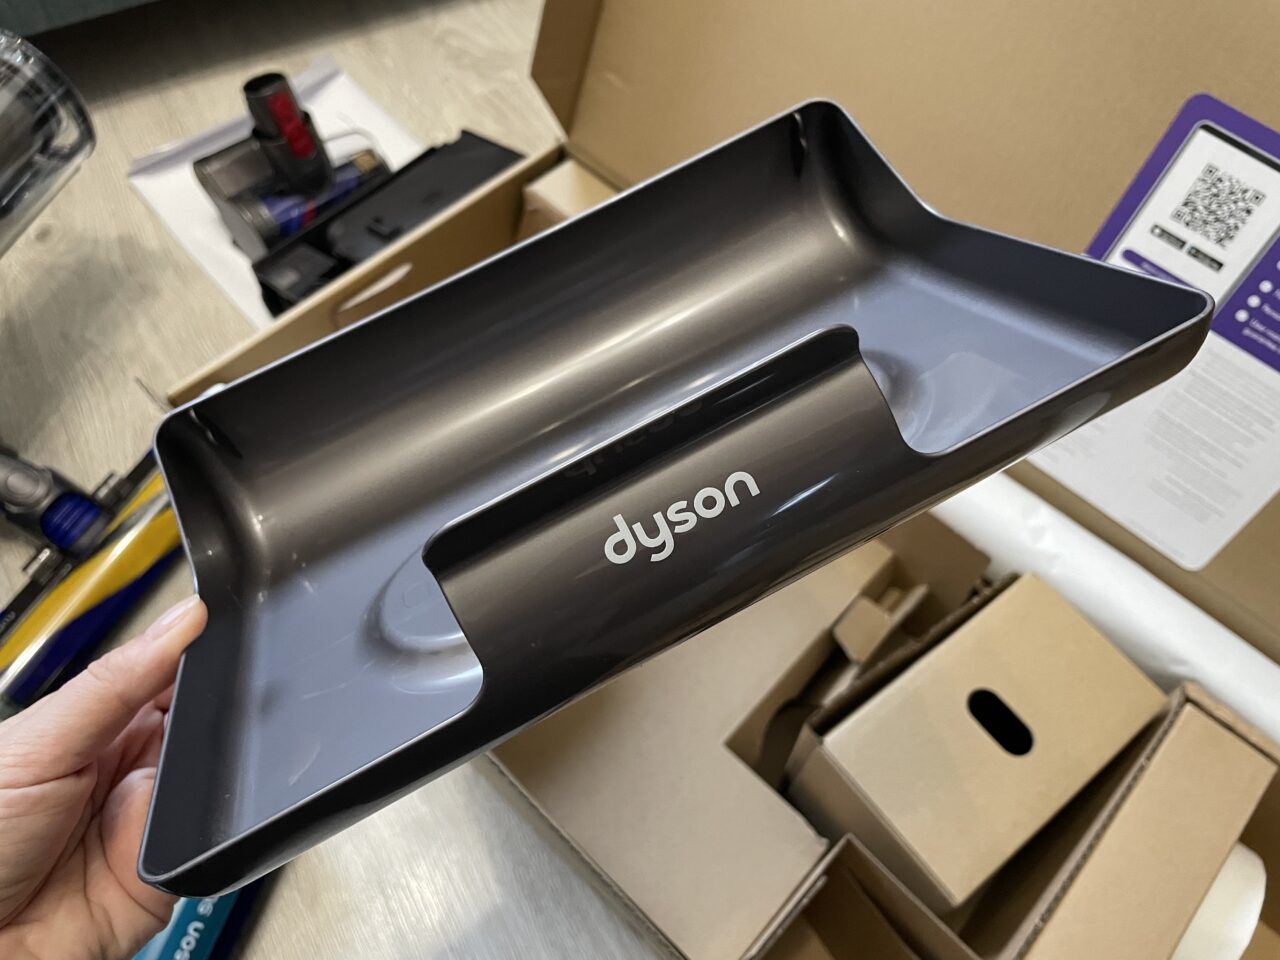 Osoba trzyma szary pojemnik do odkurzacza marki Dyson nad otwartym pudełkiem z różnymi akcesoriami do sprzątania.